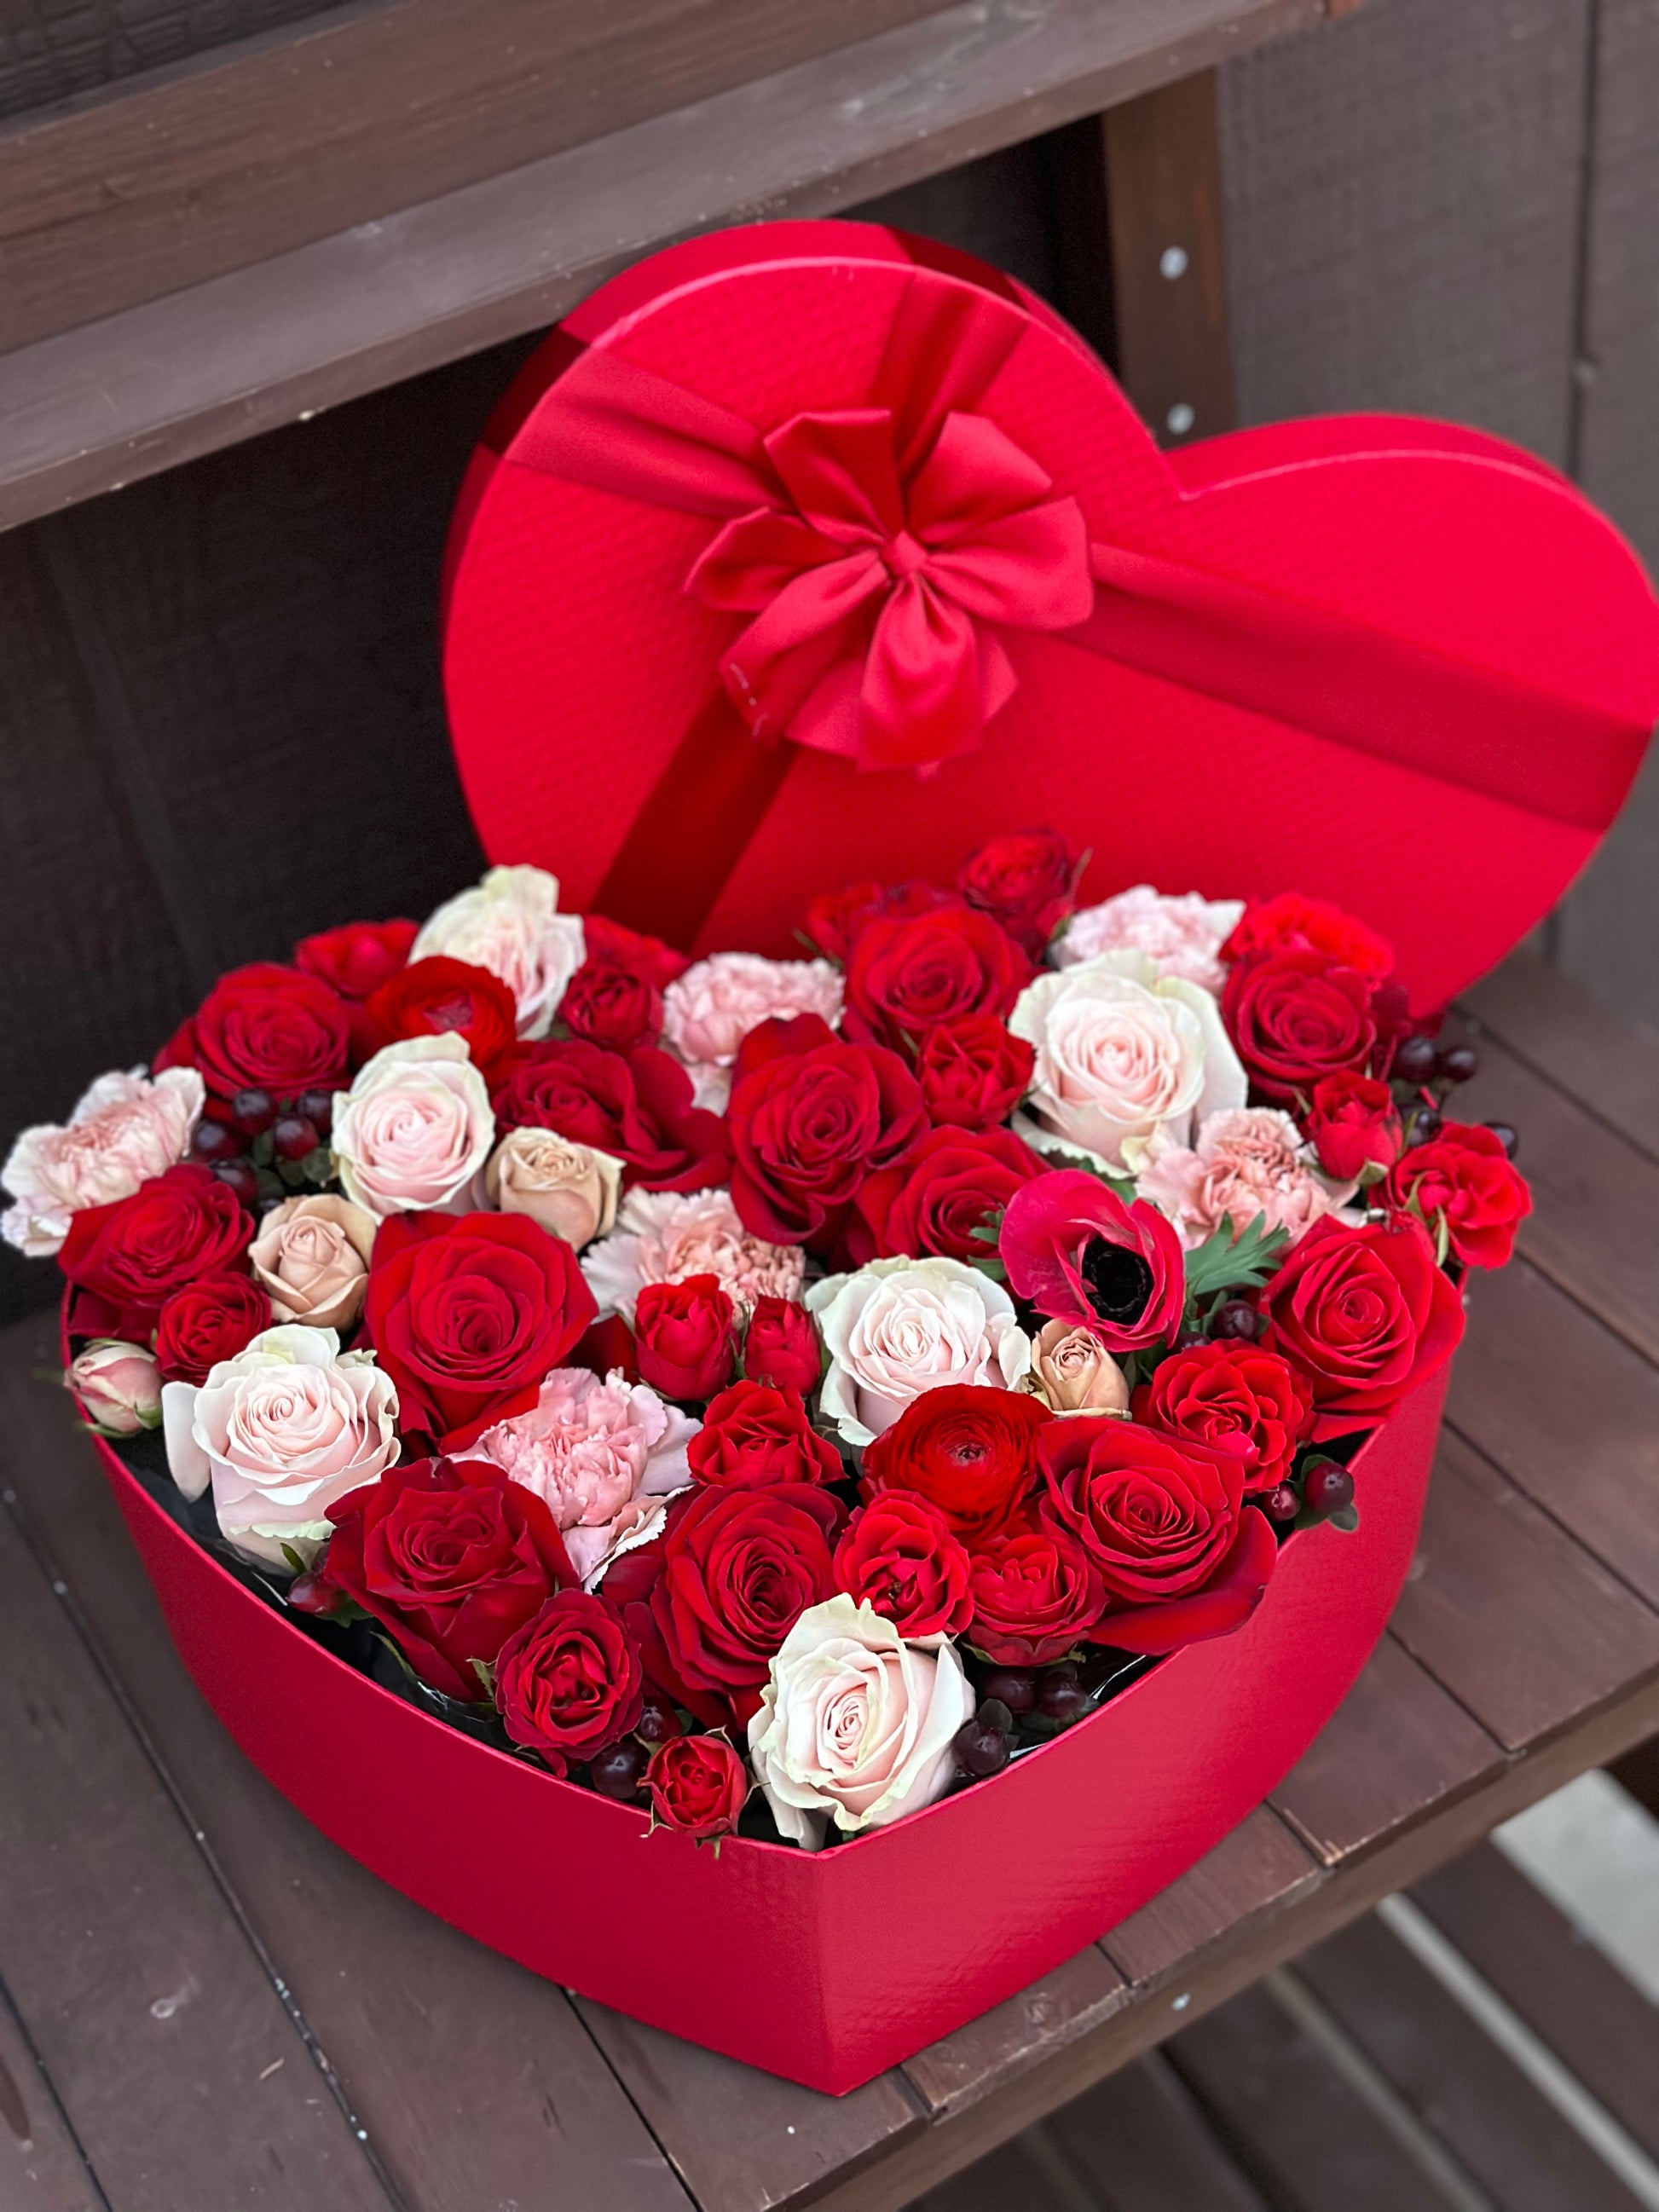 I Heart You | Heart shape flower box arrangement